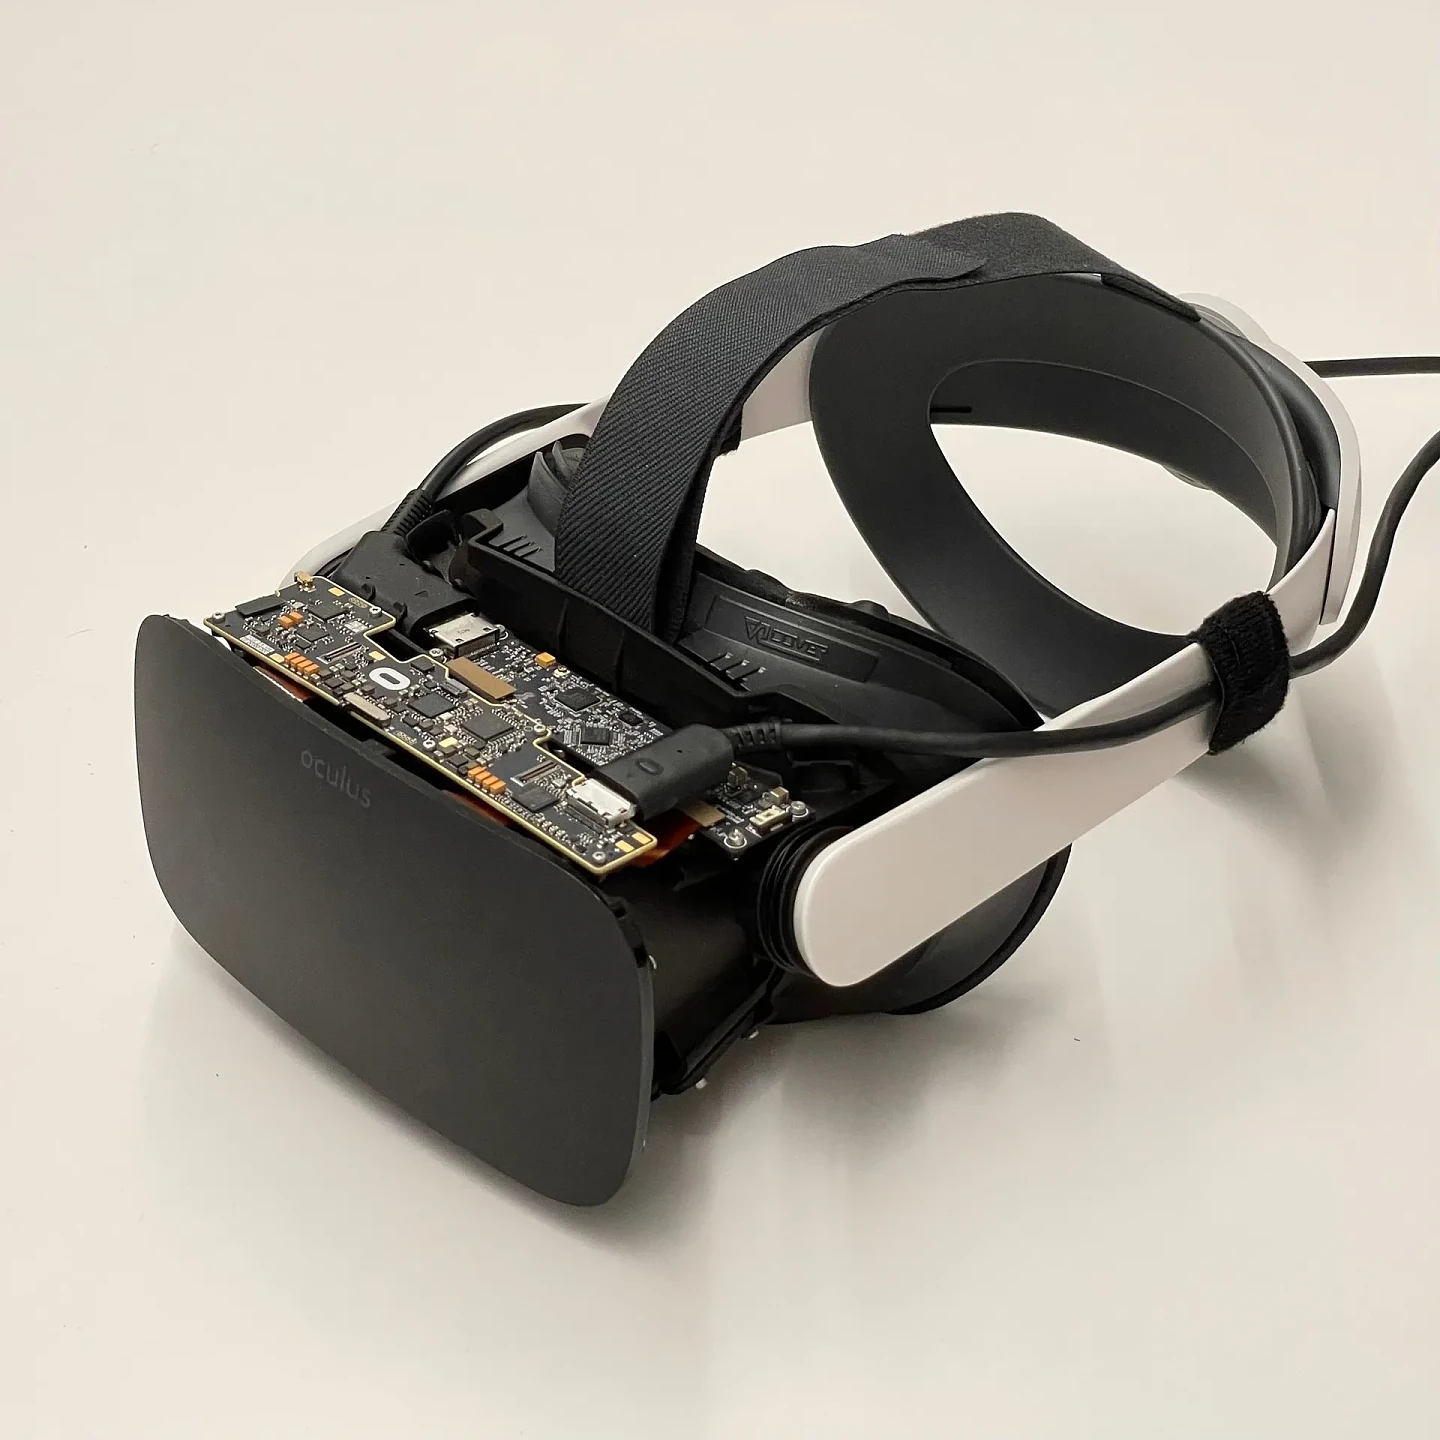 Meta演示四款VR头盔原型 用于测试神秘功能但不出售 - 3